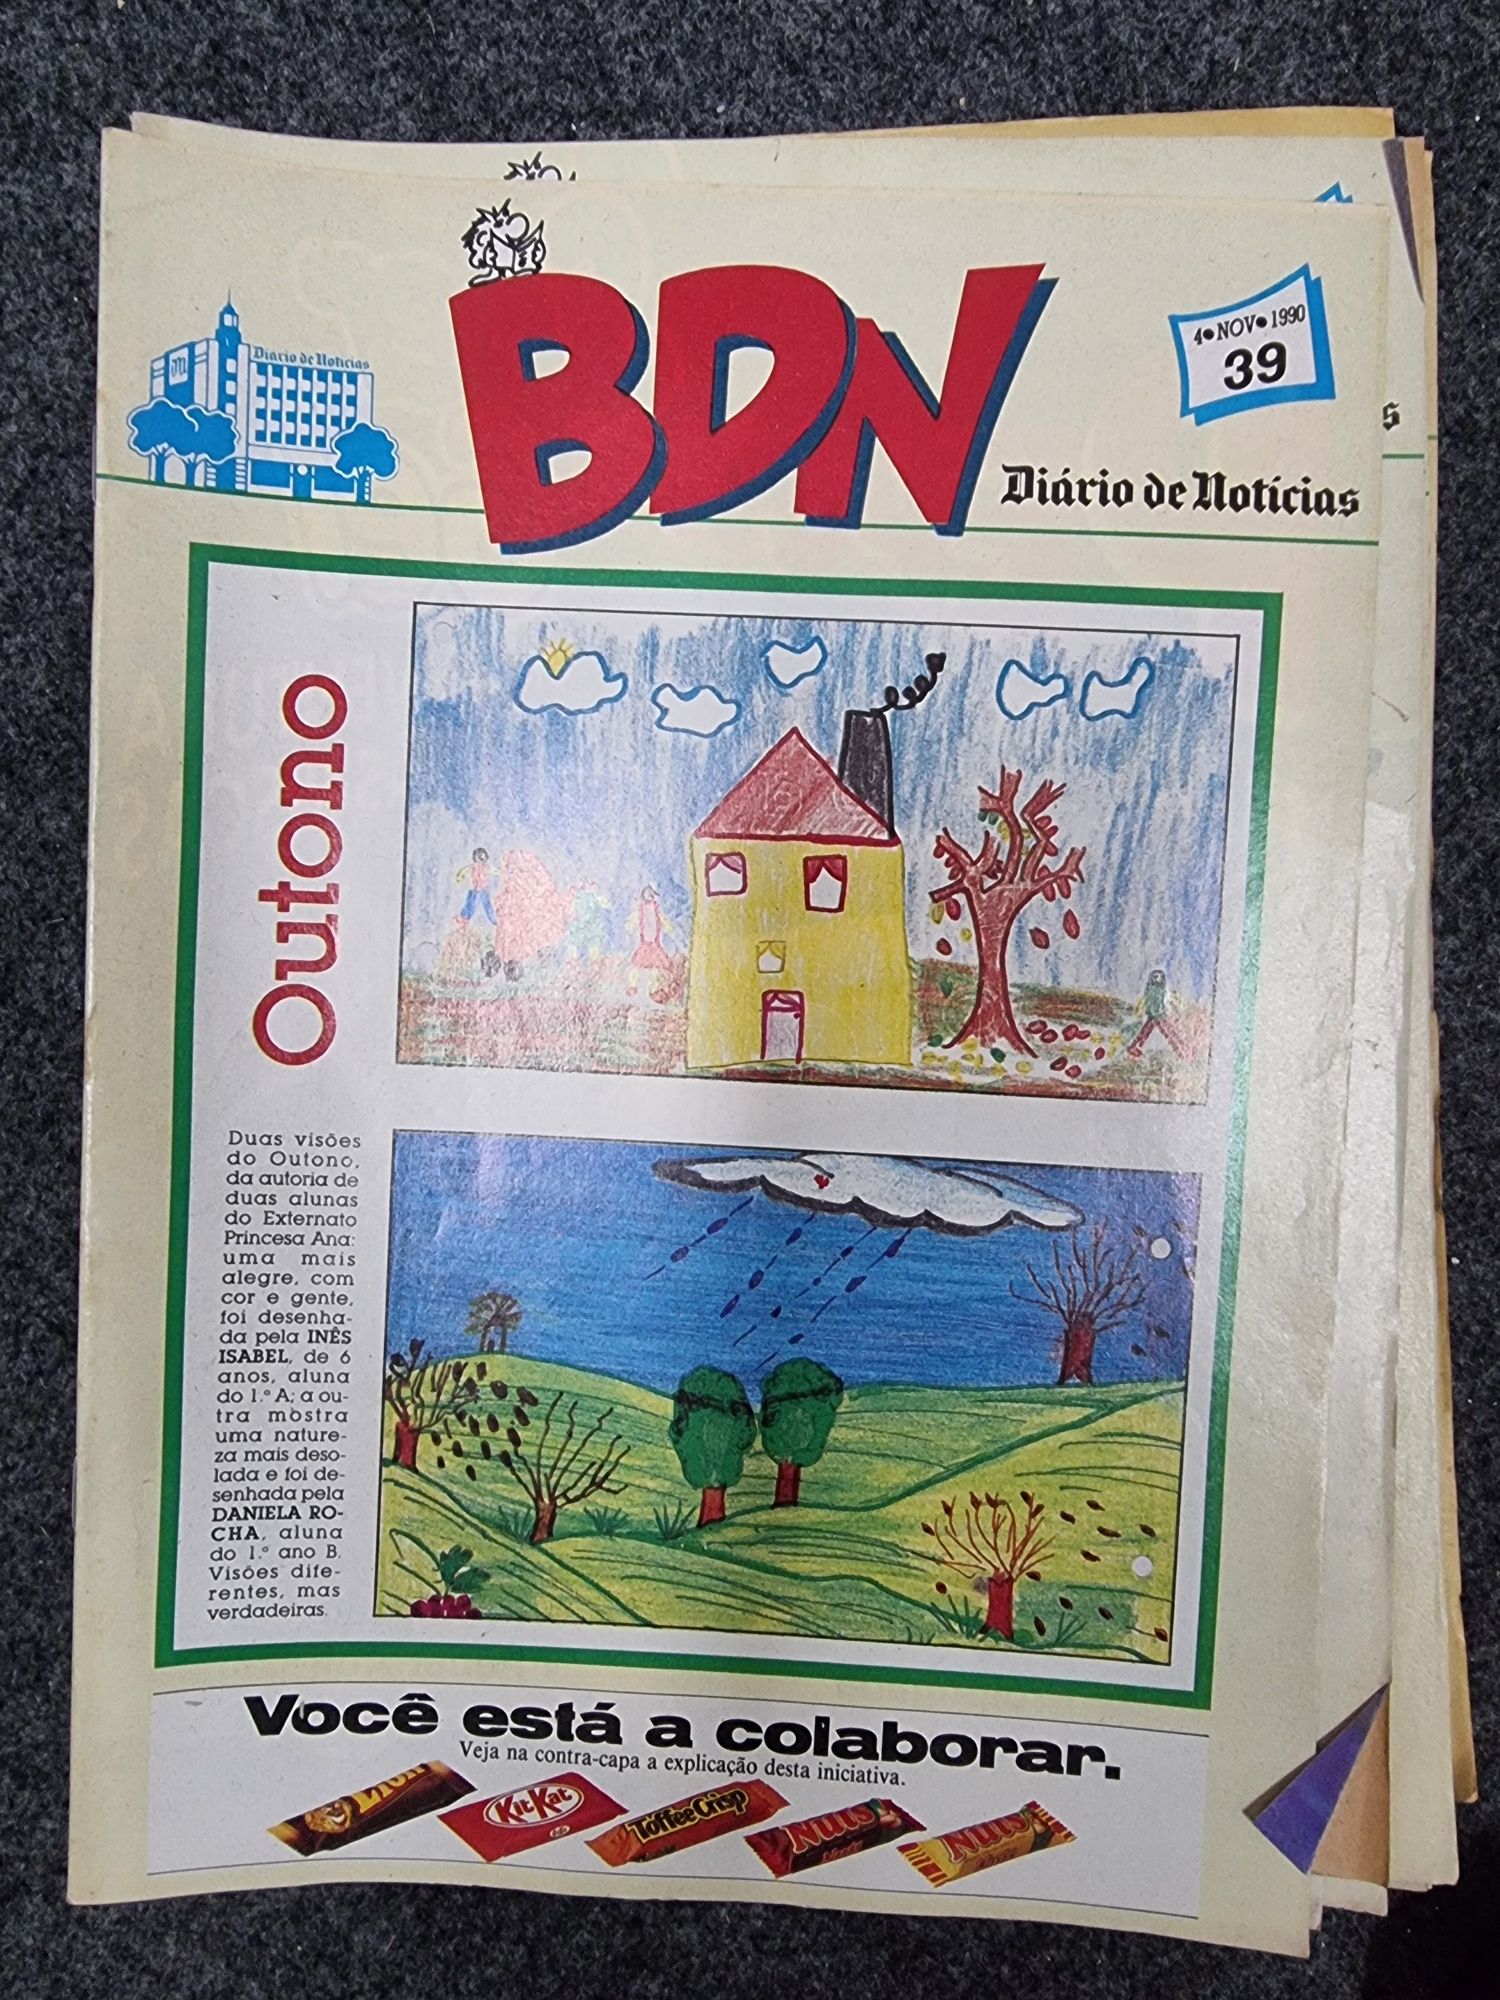 B.D. "BDN" (diário de notícias)